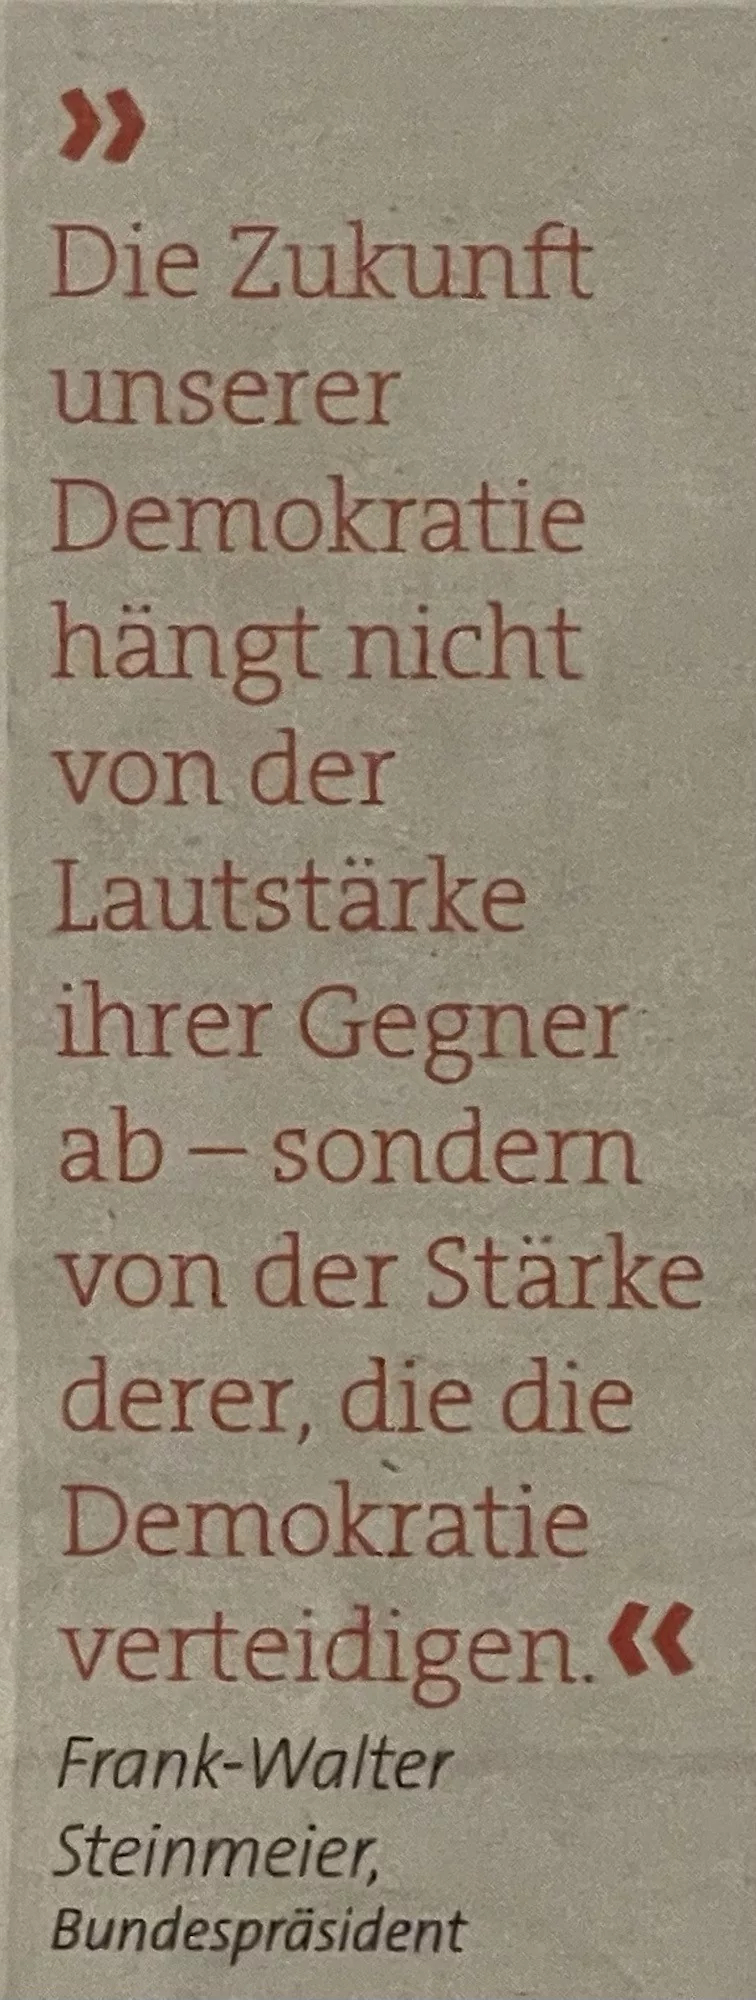 Frank-Walter Steinmeier, Bundespräsident Die Zukunft unserer Demokratie hängt nicht von der Lautstärke ihrer Gegner ab - sonder von der Stärke derer, die die Demokratie verteidigen.